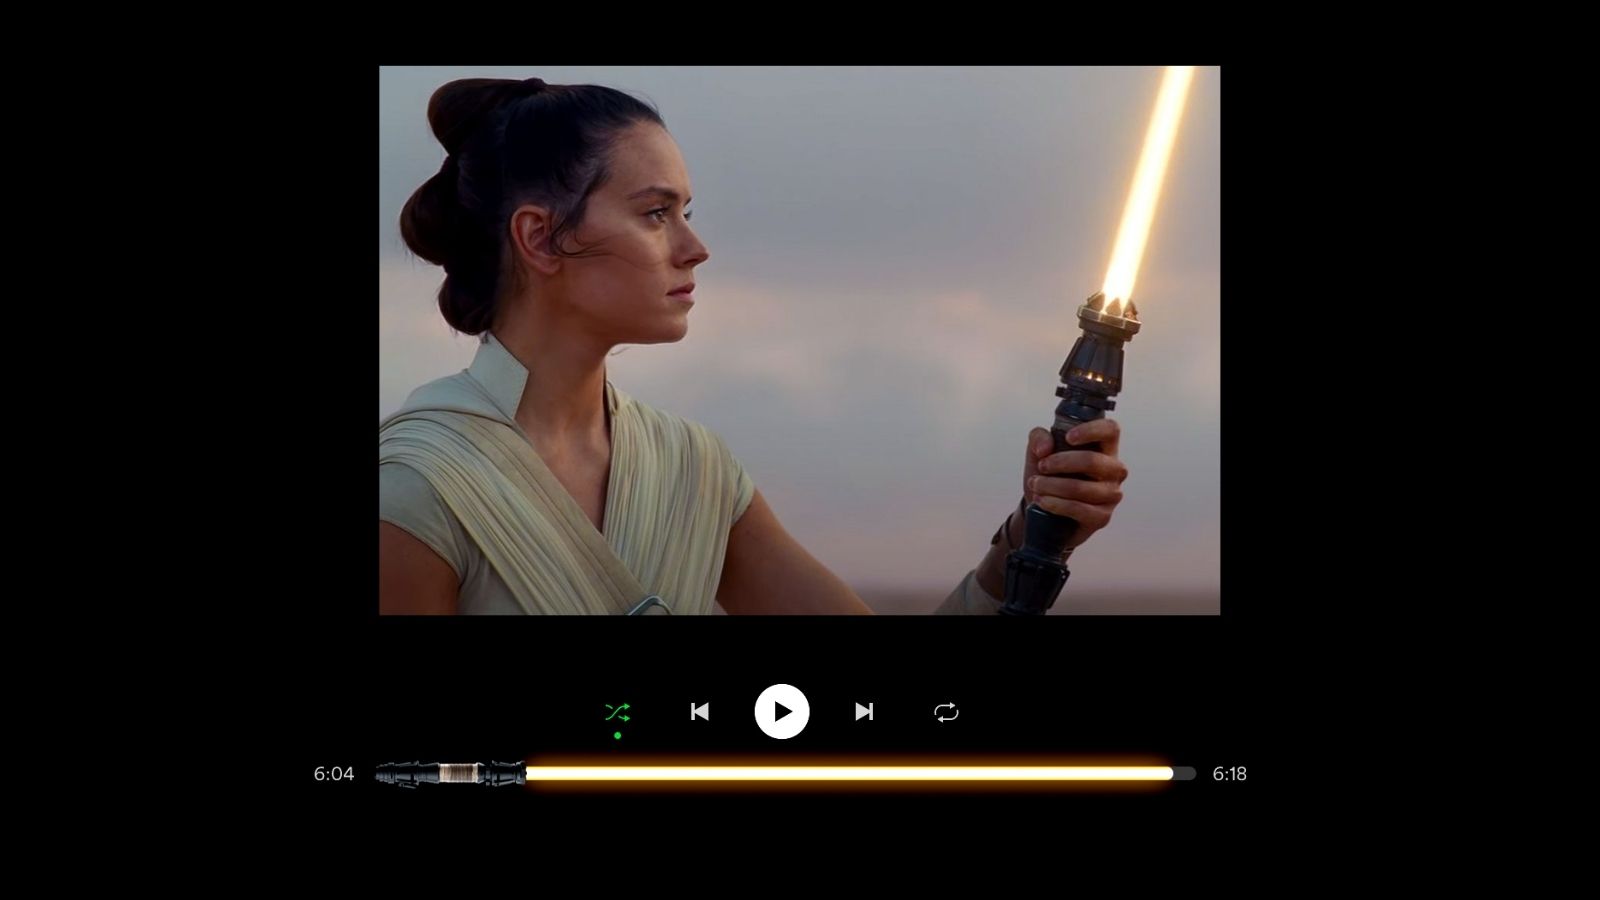 Truco de Spotify: Cómo poner espada láser de Star Wars como barra de reproducción 